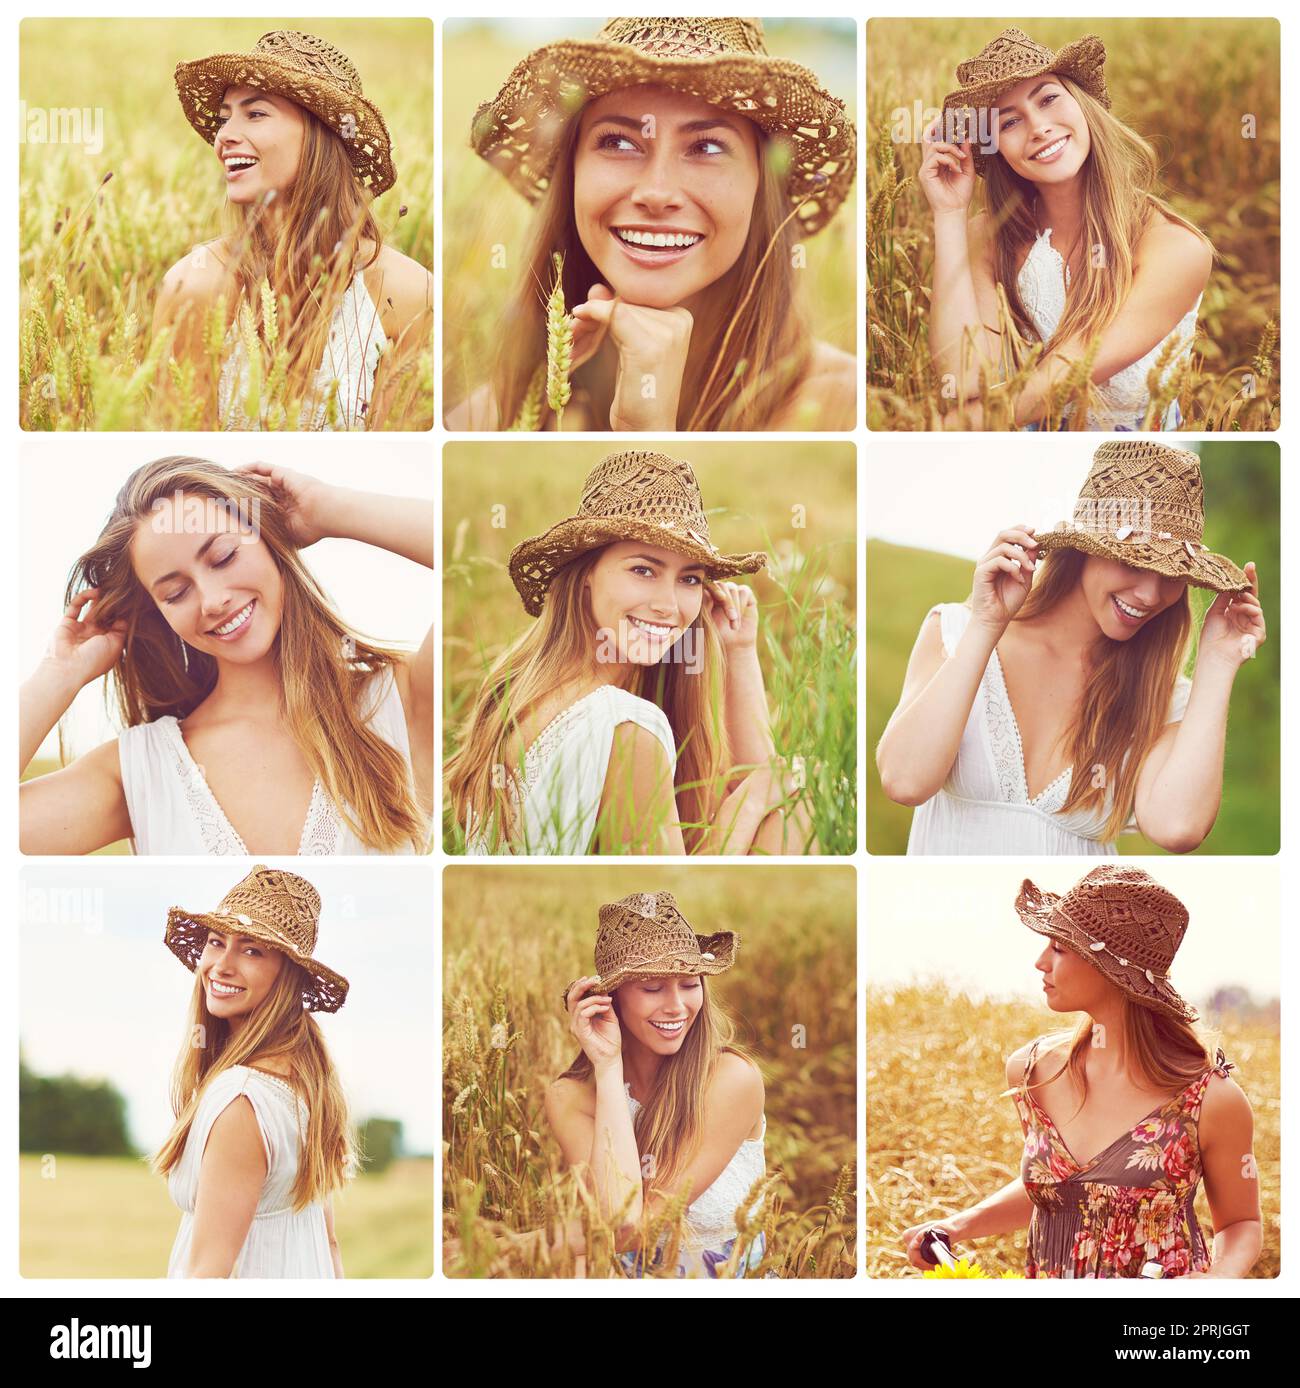 Respirate l'aria fresca della campagna. Immagine composita di una bella giovane donna fuori in un campo. Foto Stock